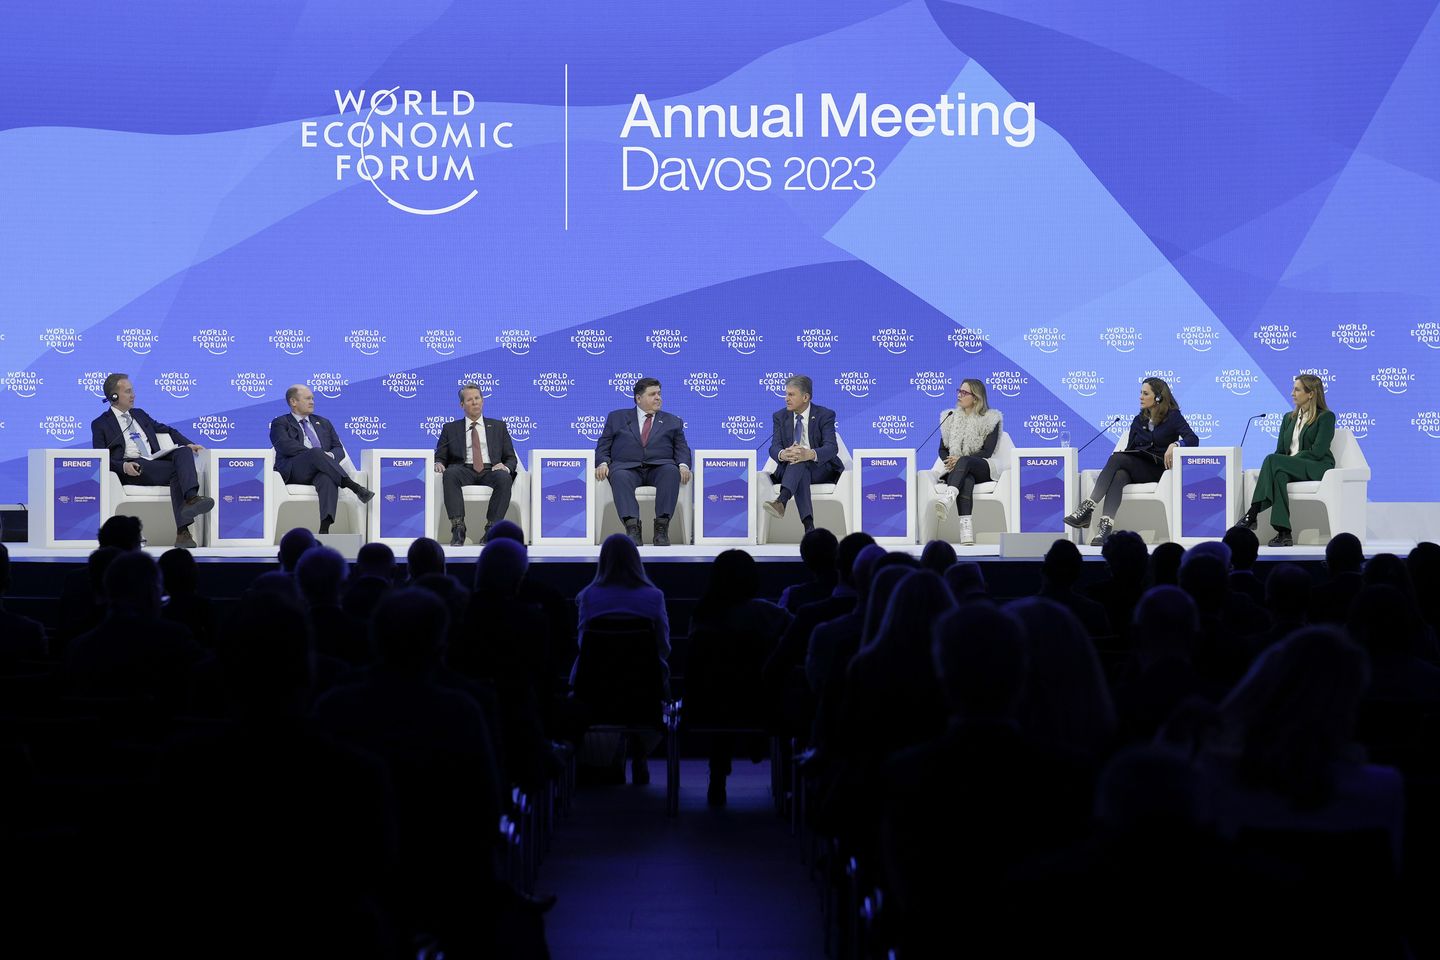 Joe Manchin, Kyrsten Sinema at Davos reassert opposition to gutting filibuster